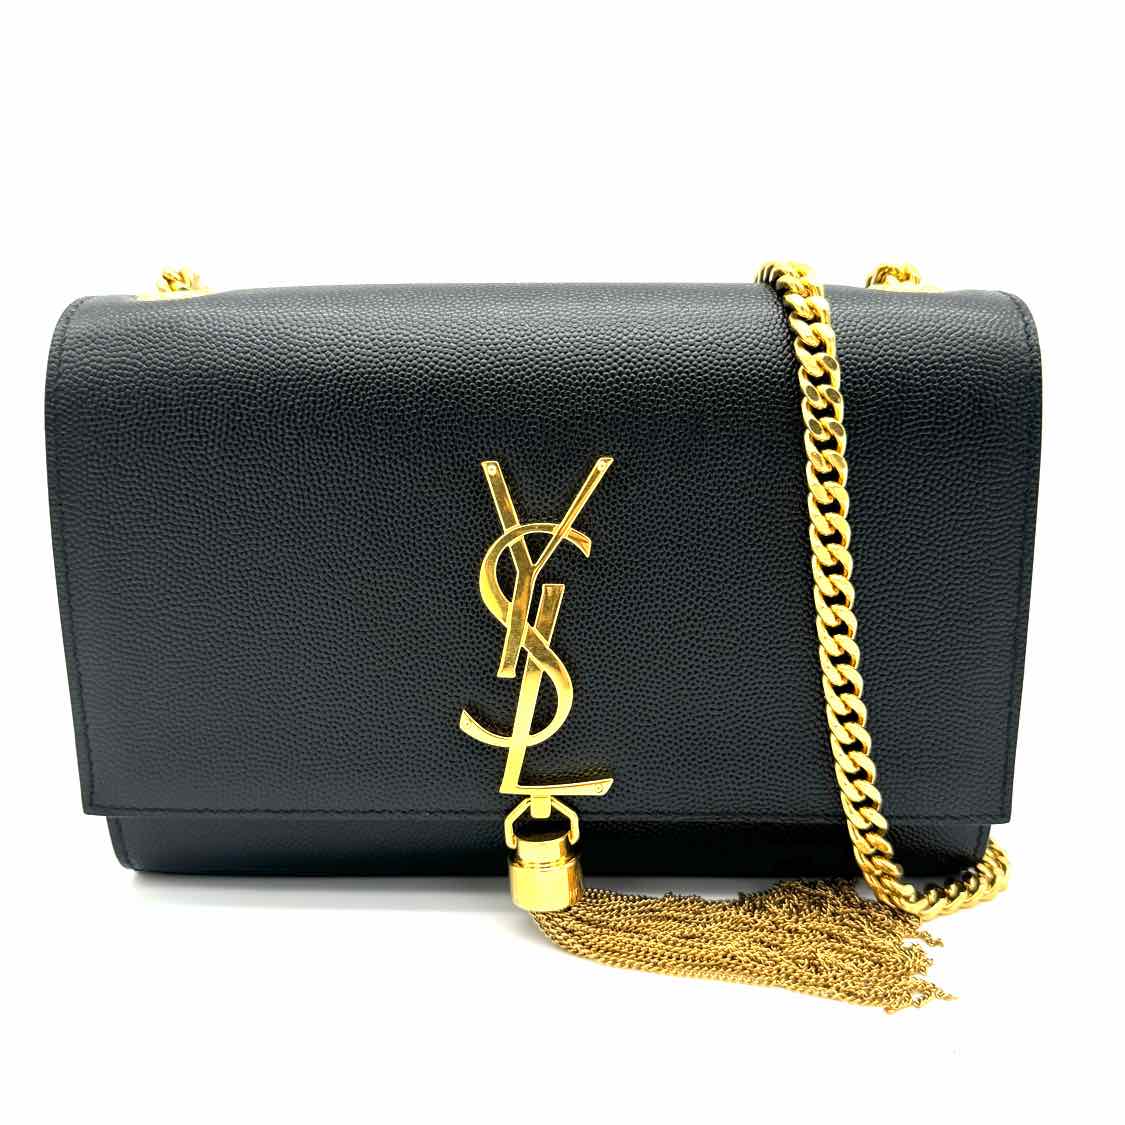 SAINT LAURENT Small Kate Tassel Chain Bag Black Gold Hardware